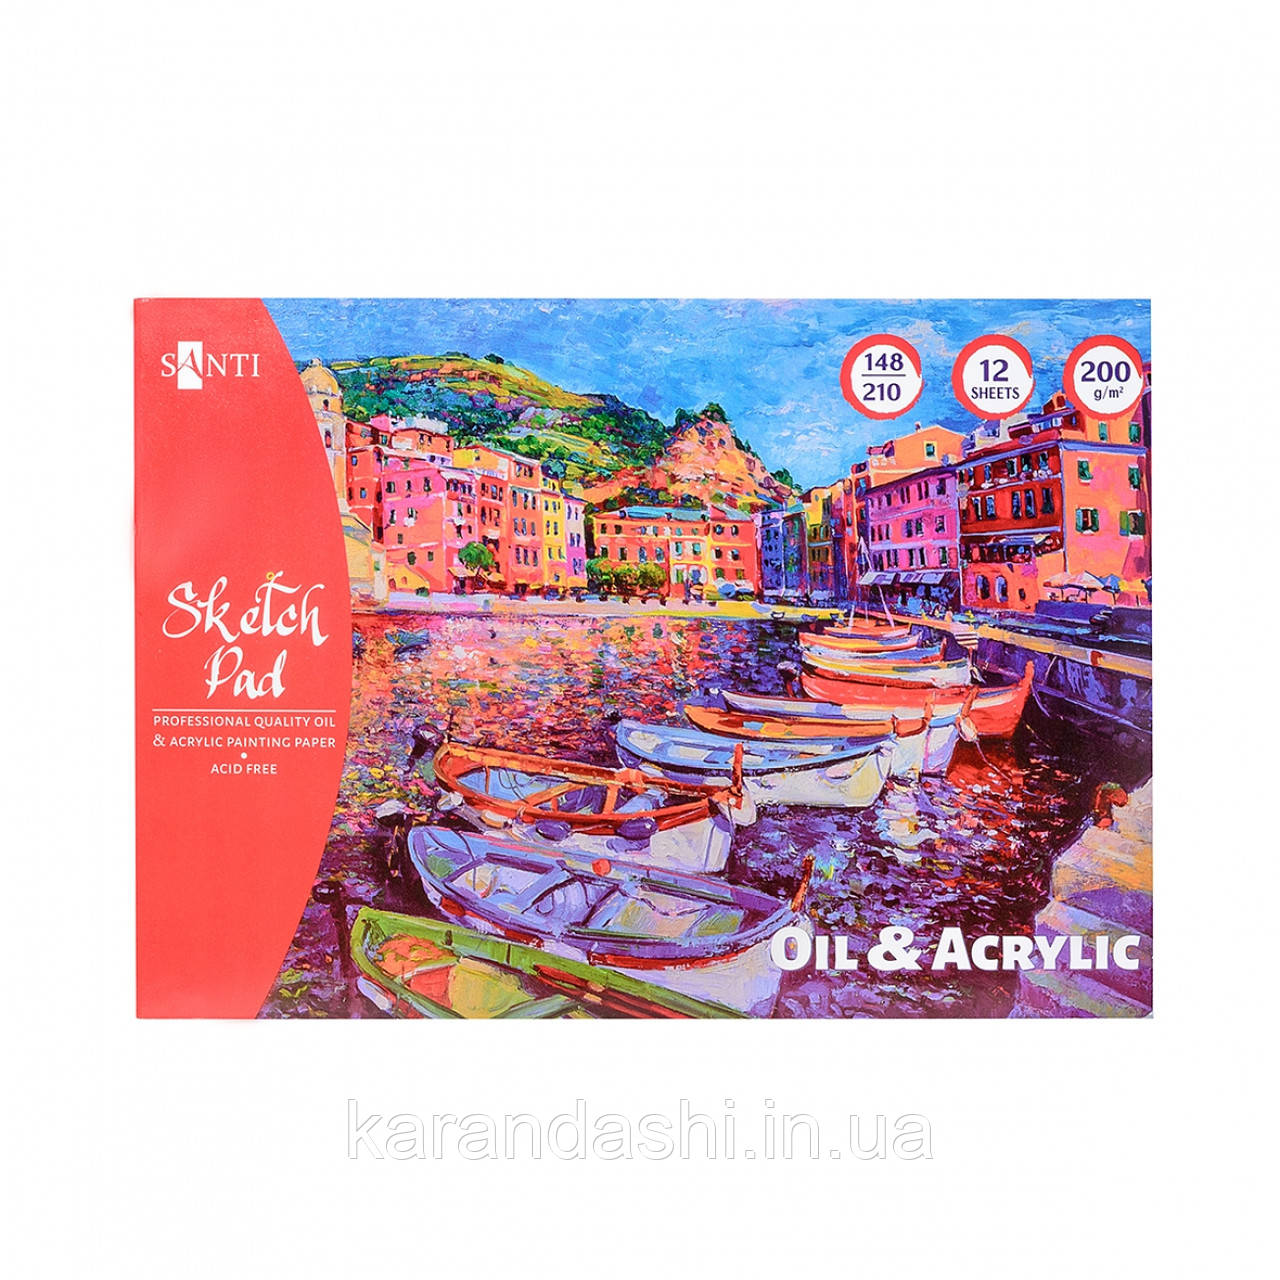 Альбом для ескізів Santi олійними та акриловими фарбами, 200 г/м2, А5 , 12 арк. 742549